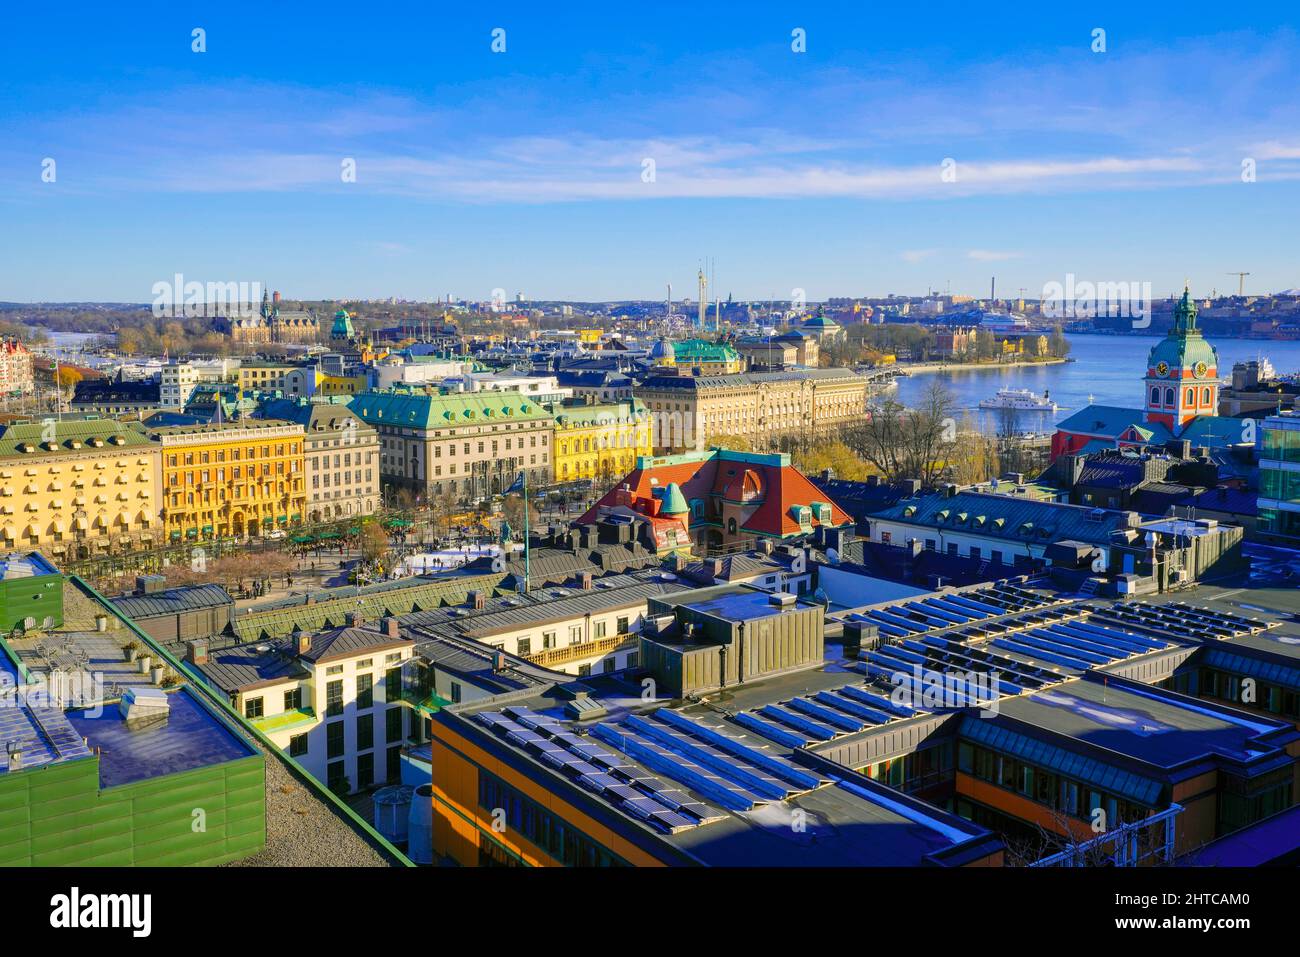 Wundervolle Aussicht auf die Skyline von Stockholm. Schweden. Stockholm ist die Hauptstadt, das kulturelle, politische und wirtschaftliche Zentrum Schwedens. Stockfoto